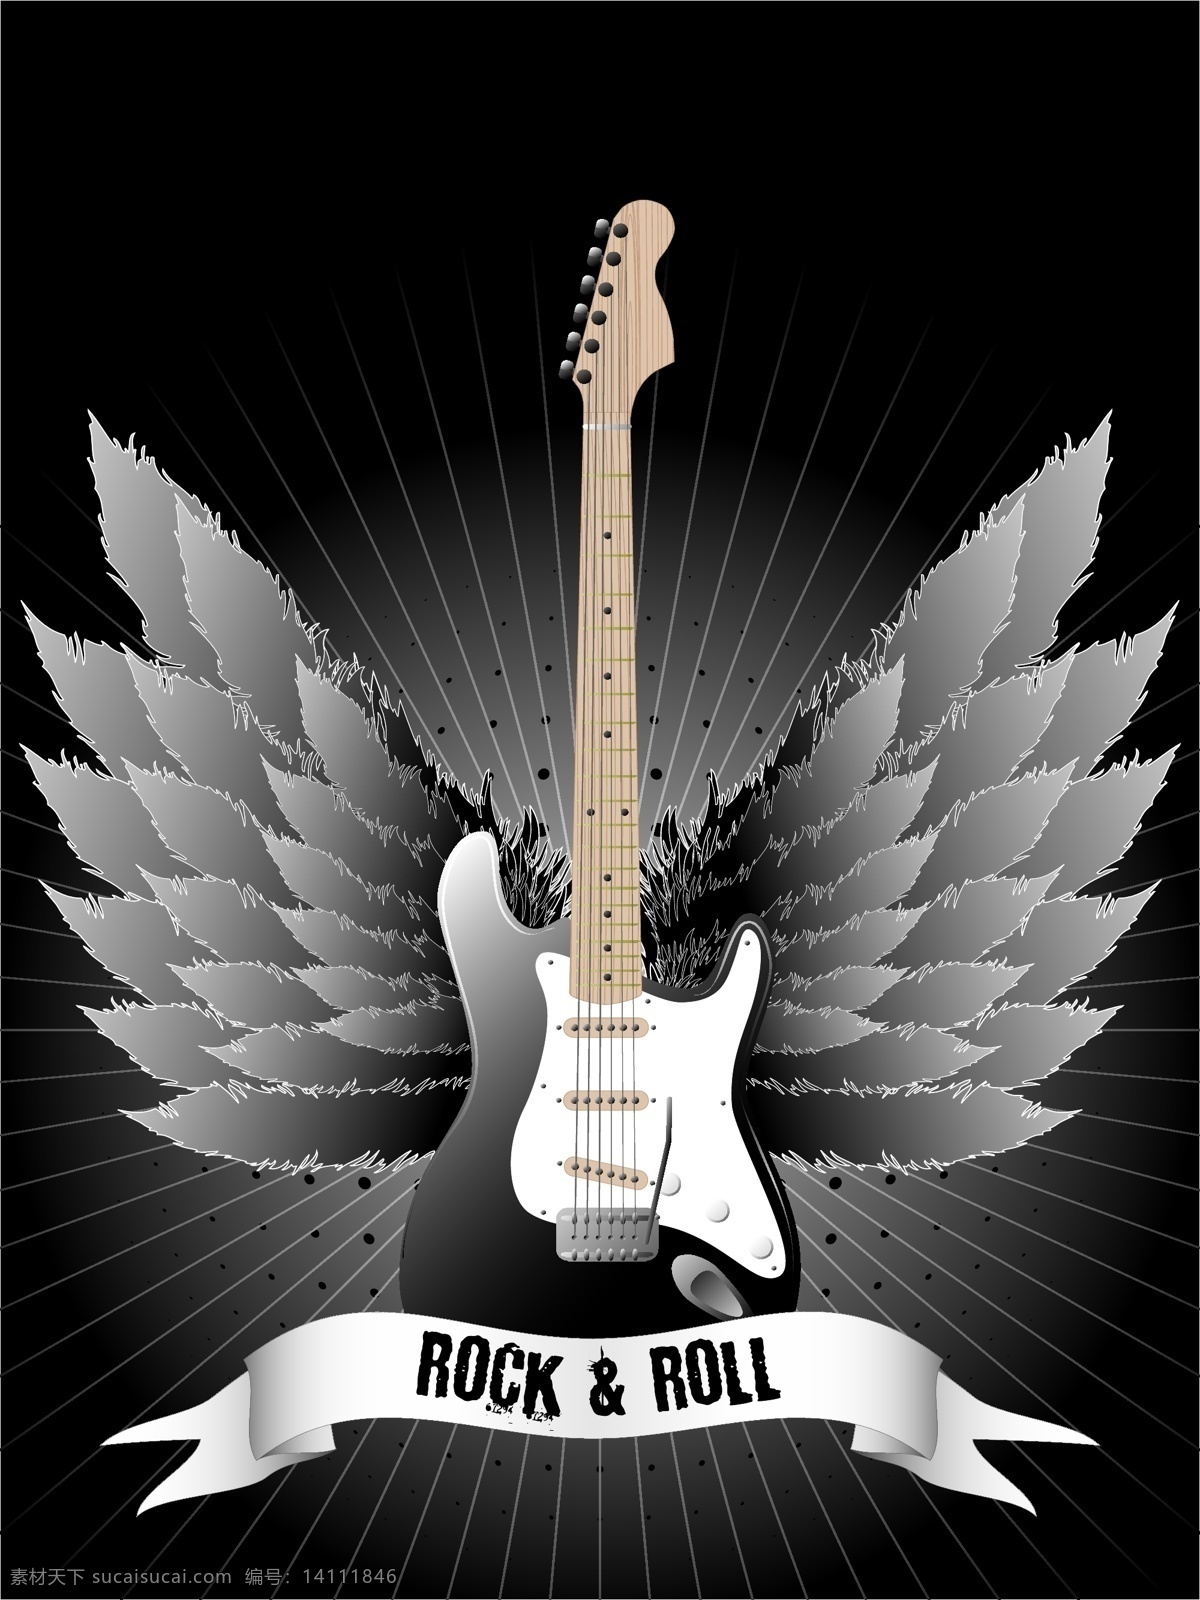 吉他 翅膀 矢量图 麦克风 双翼 吉他乐器 摇滚音乐 音乐海报 影音娱乐 生活百科 矢量素材 黑色